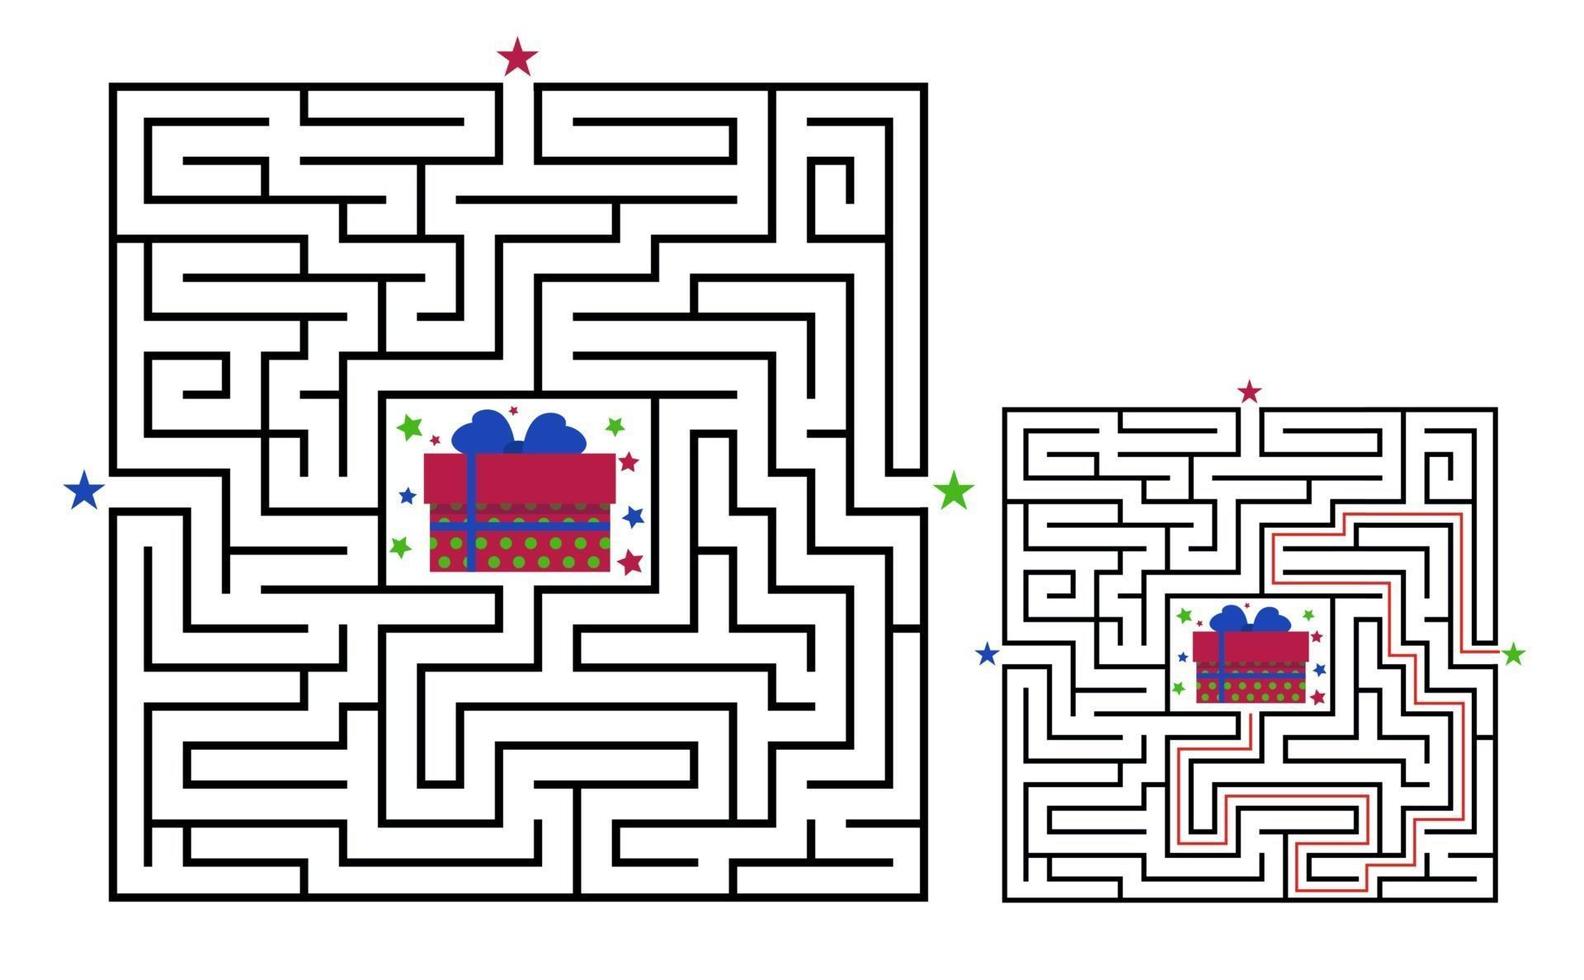 kvadrat labyrint labyrint spel för barn. labyrint logik förvirring. vektor